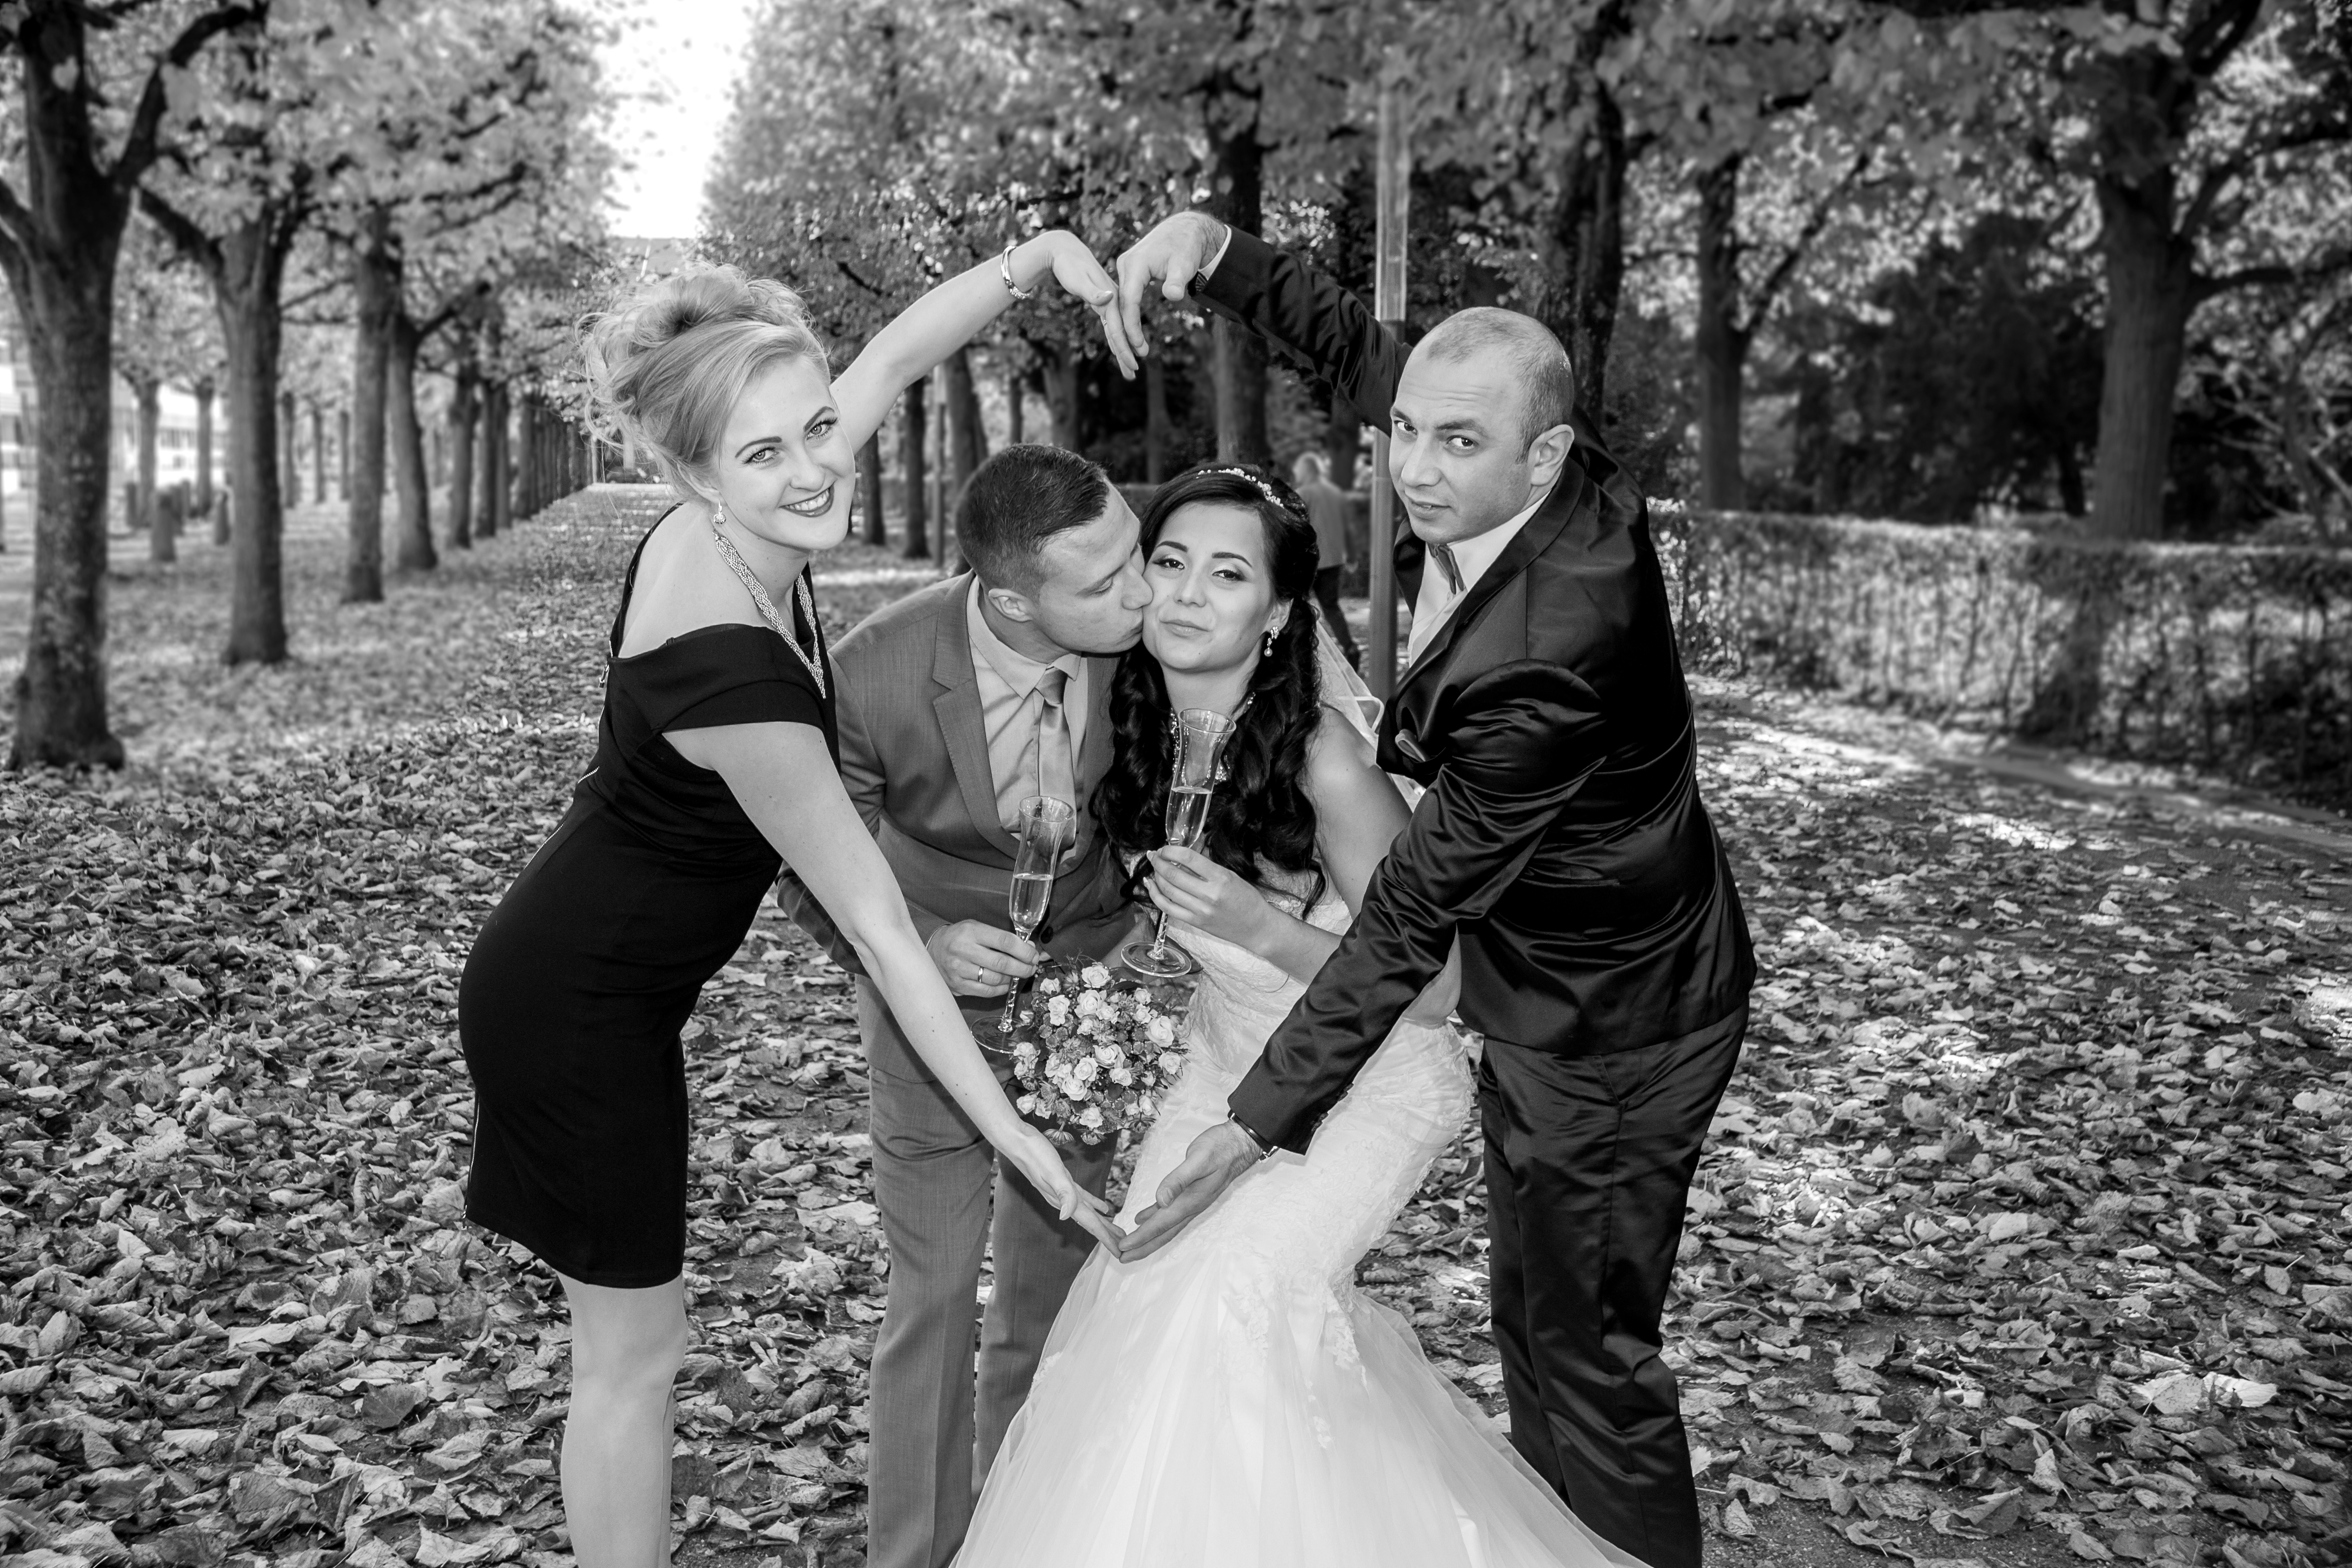 Hochzeitsfotograf Offenburg erstellt Hochzeitsreportagen, bietet Paarshootings &amp;amp; Videos im modernen, kreativen und echten Stil an